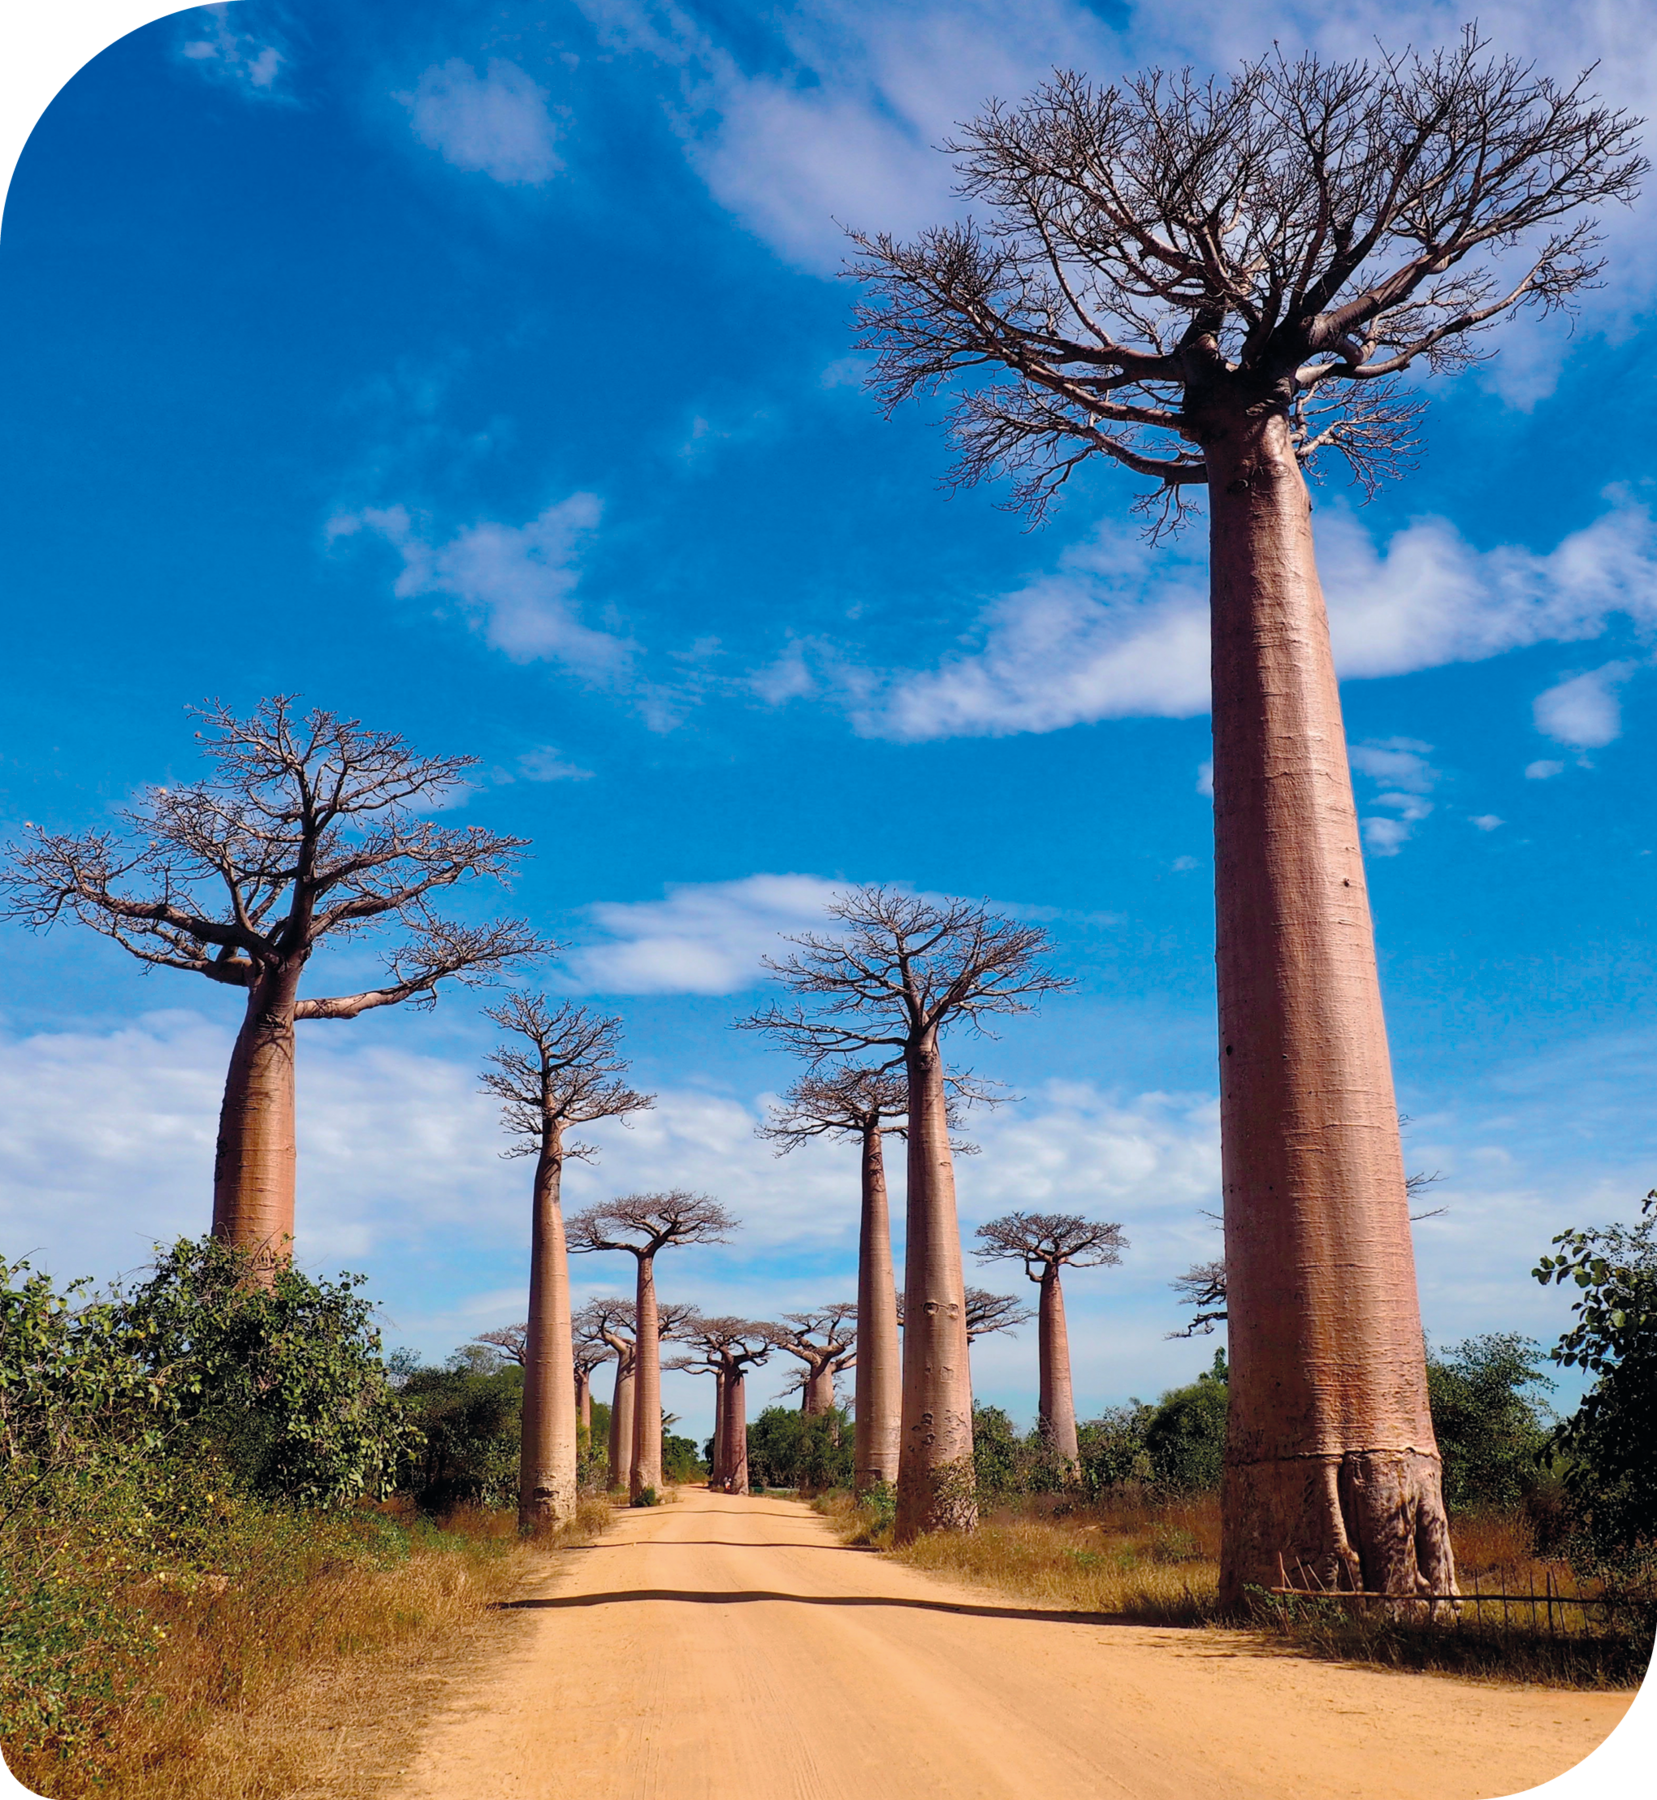 Fotografia. Estrada de terra com baobás, árvores extremamente altas, com troncos bastante largos, e no topo, galhos finos e secos voltados para cima. Ao longo da estrada há também árvores menores e repletas de folhas verdes.